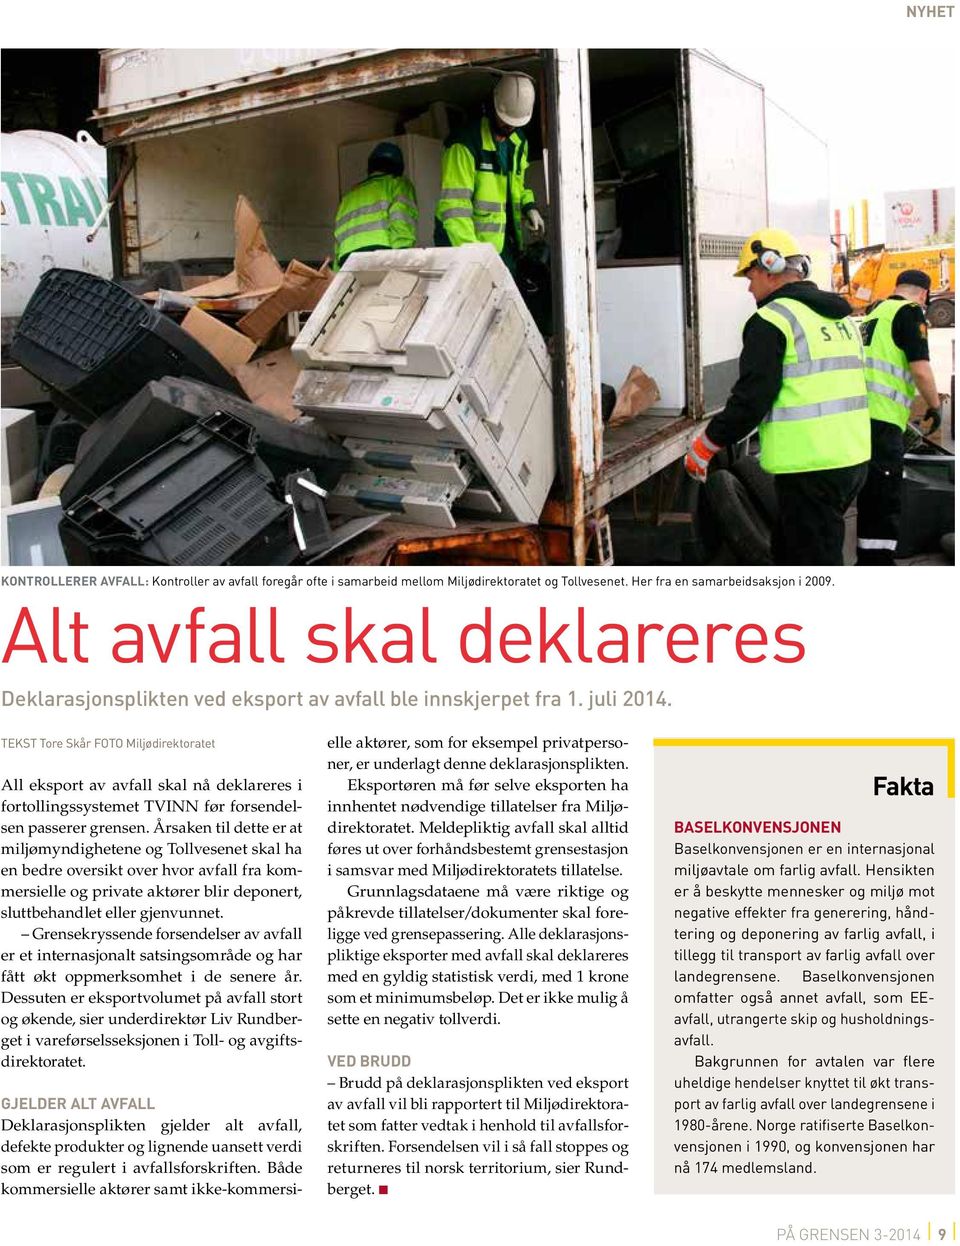 TEKST Tore Skår FOTO Miljødirektoratet All eksport av avfall skal nå deklareres i fortollingssystemet TVINN før forsendelsen passerer grensen.